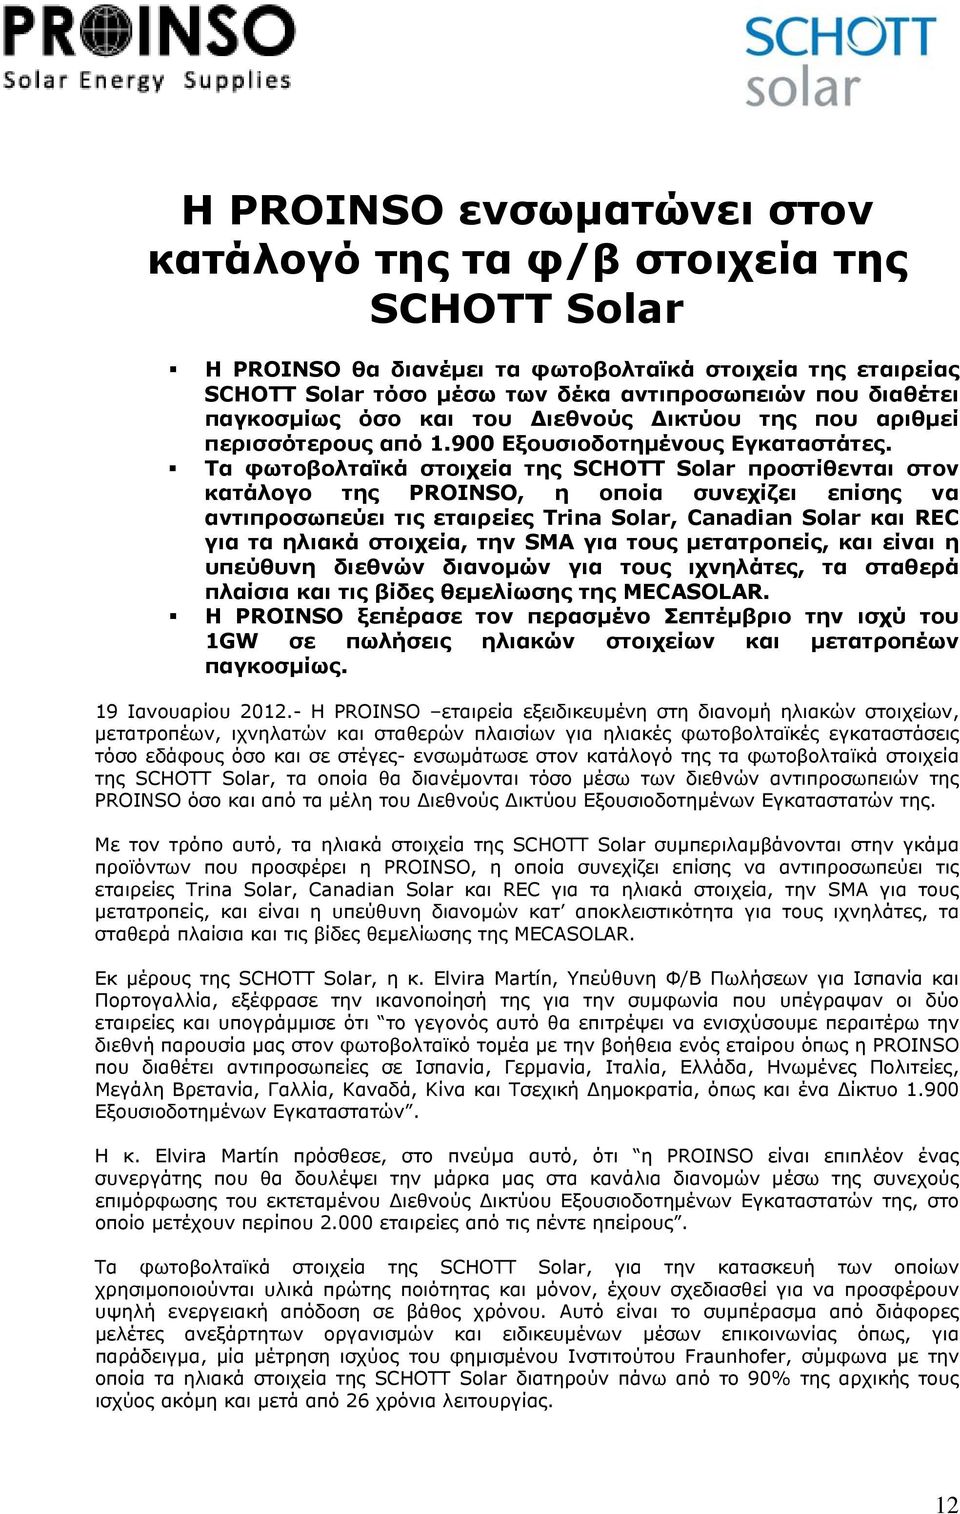 Τα φωτοβολταϊκά στοιχεία της SCHOTT Solar προστίθενται στον κατάλογο της PROINSO, η οποία συνεχίζει επίσης να αντιπροσωπεύει τις εταιρείες Trina Solar, Canadian Solar και REC για τα ηλιακά στοιχεία,